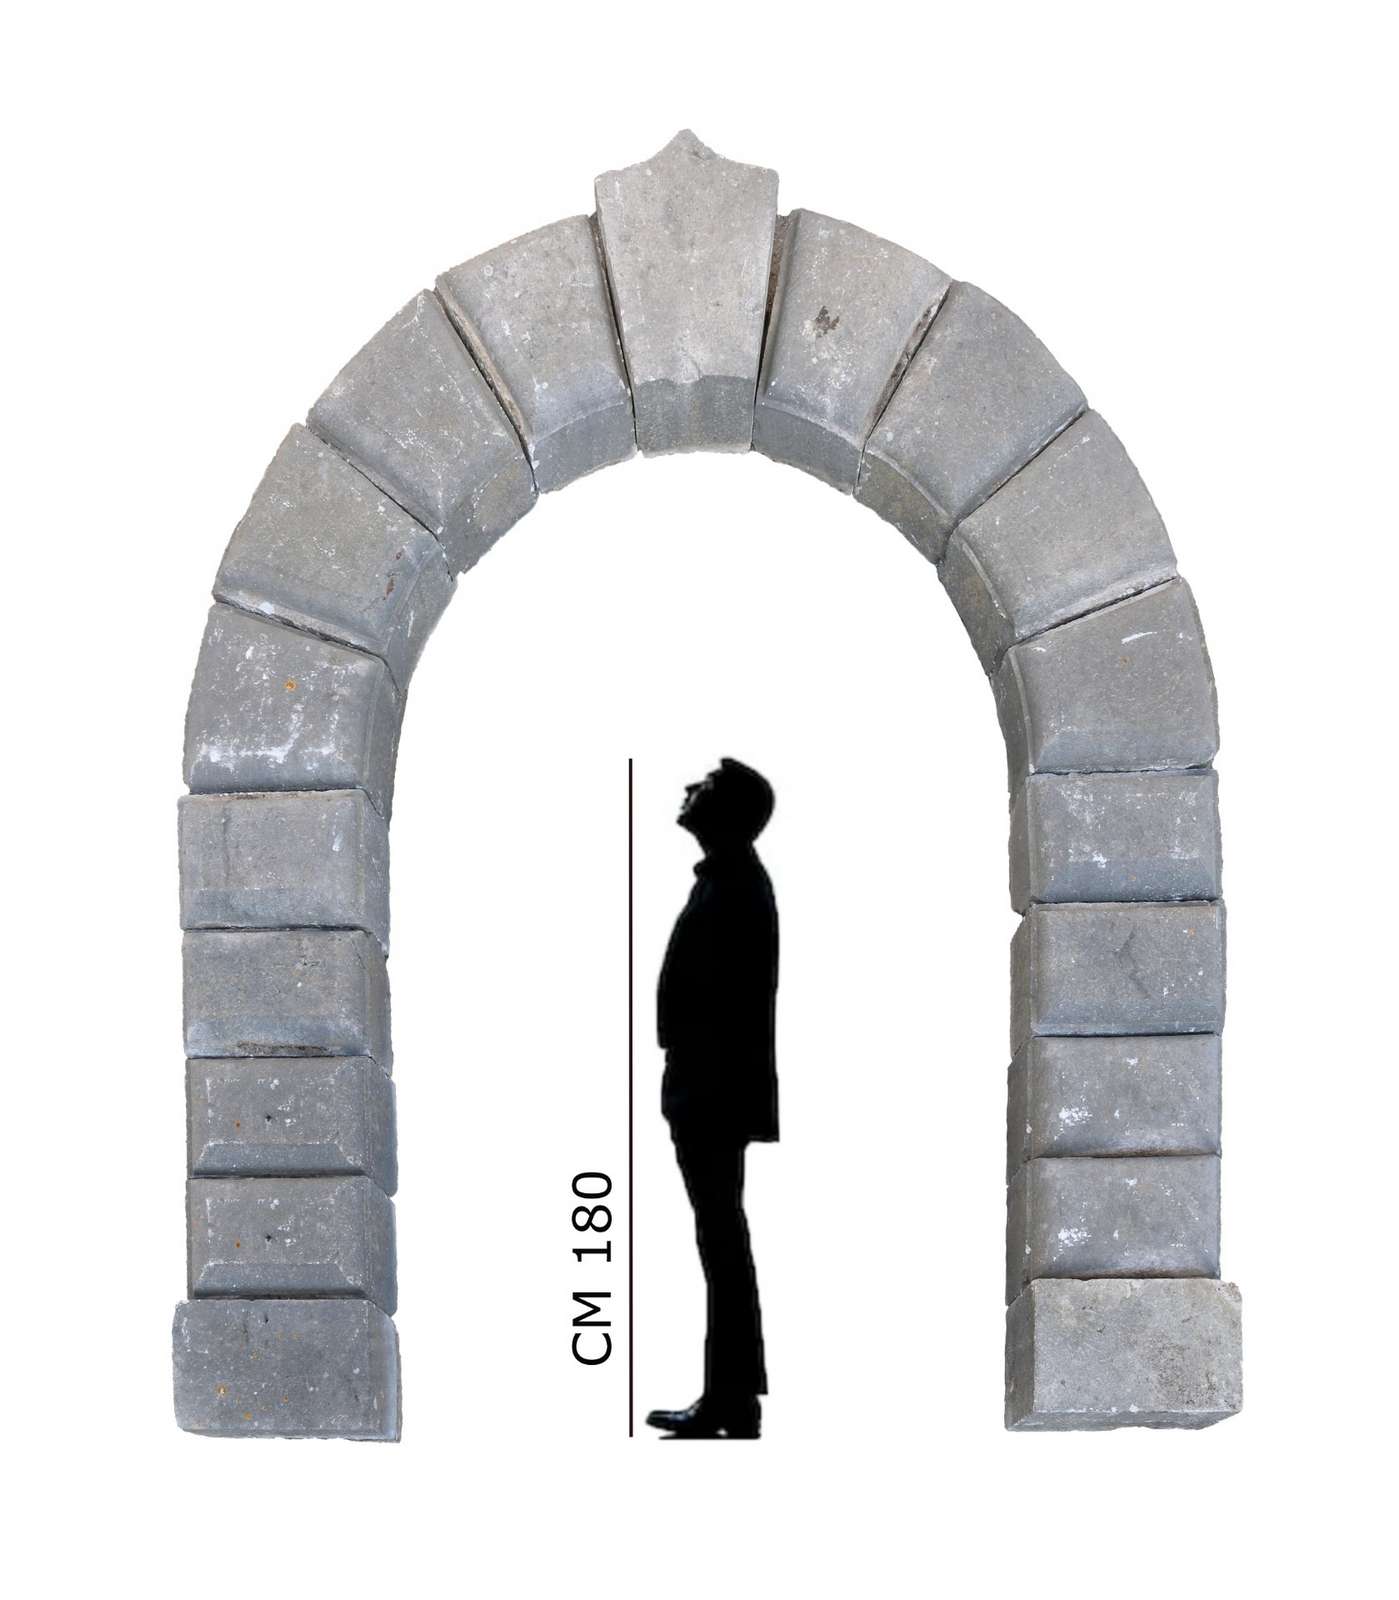 Antico portale in pietra. Epoca 1600. - Portali, Finestre e Cornici - Architettura - Prodotti - Antichità Fiorillo